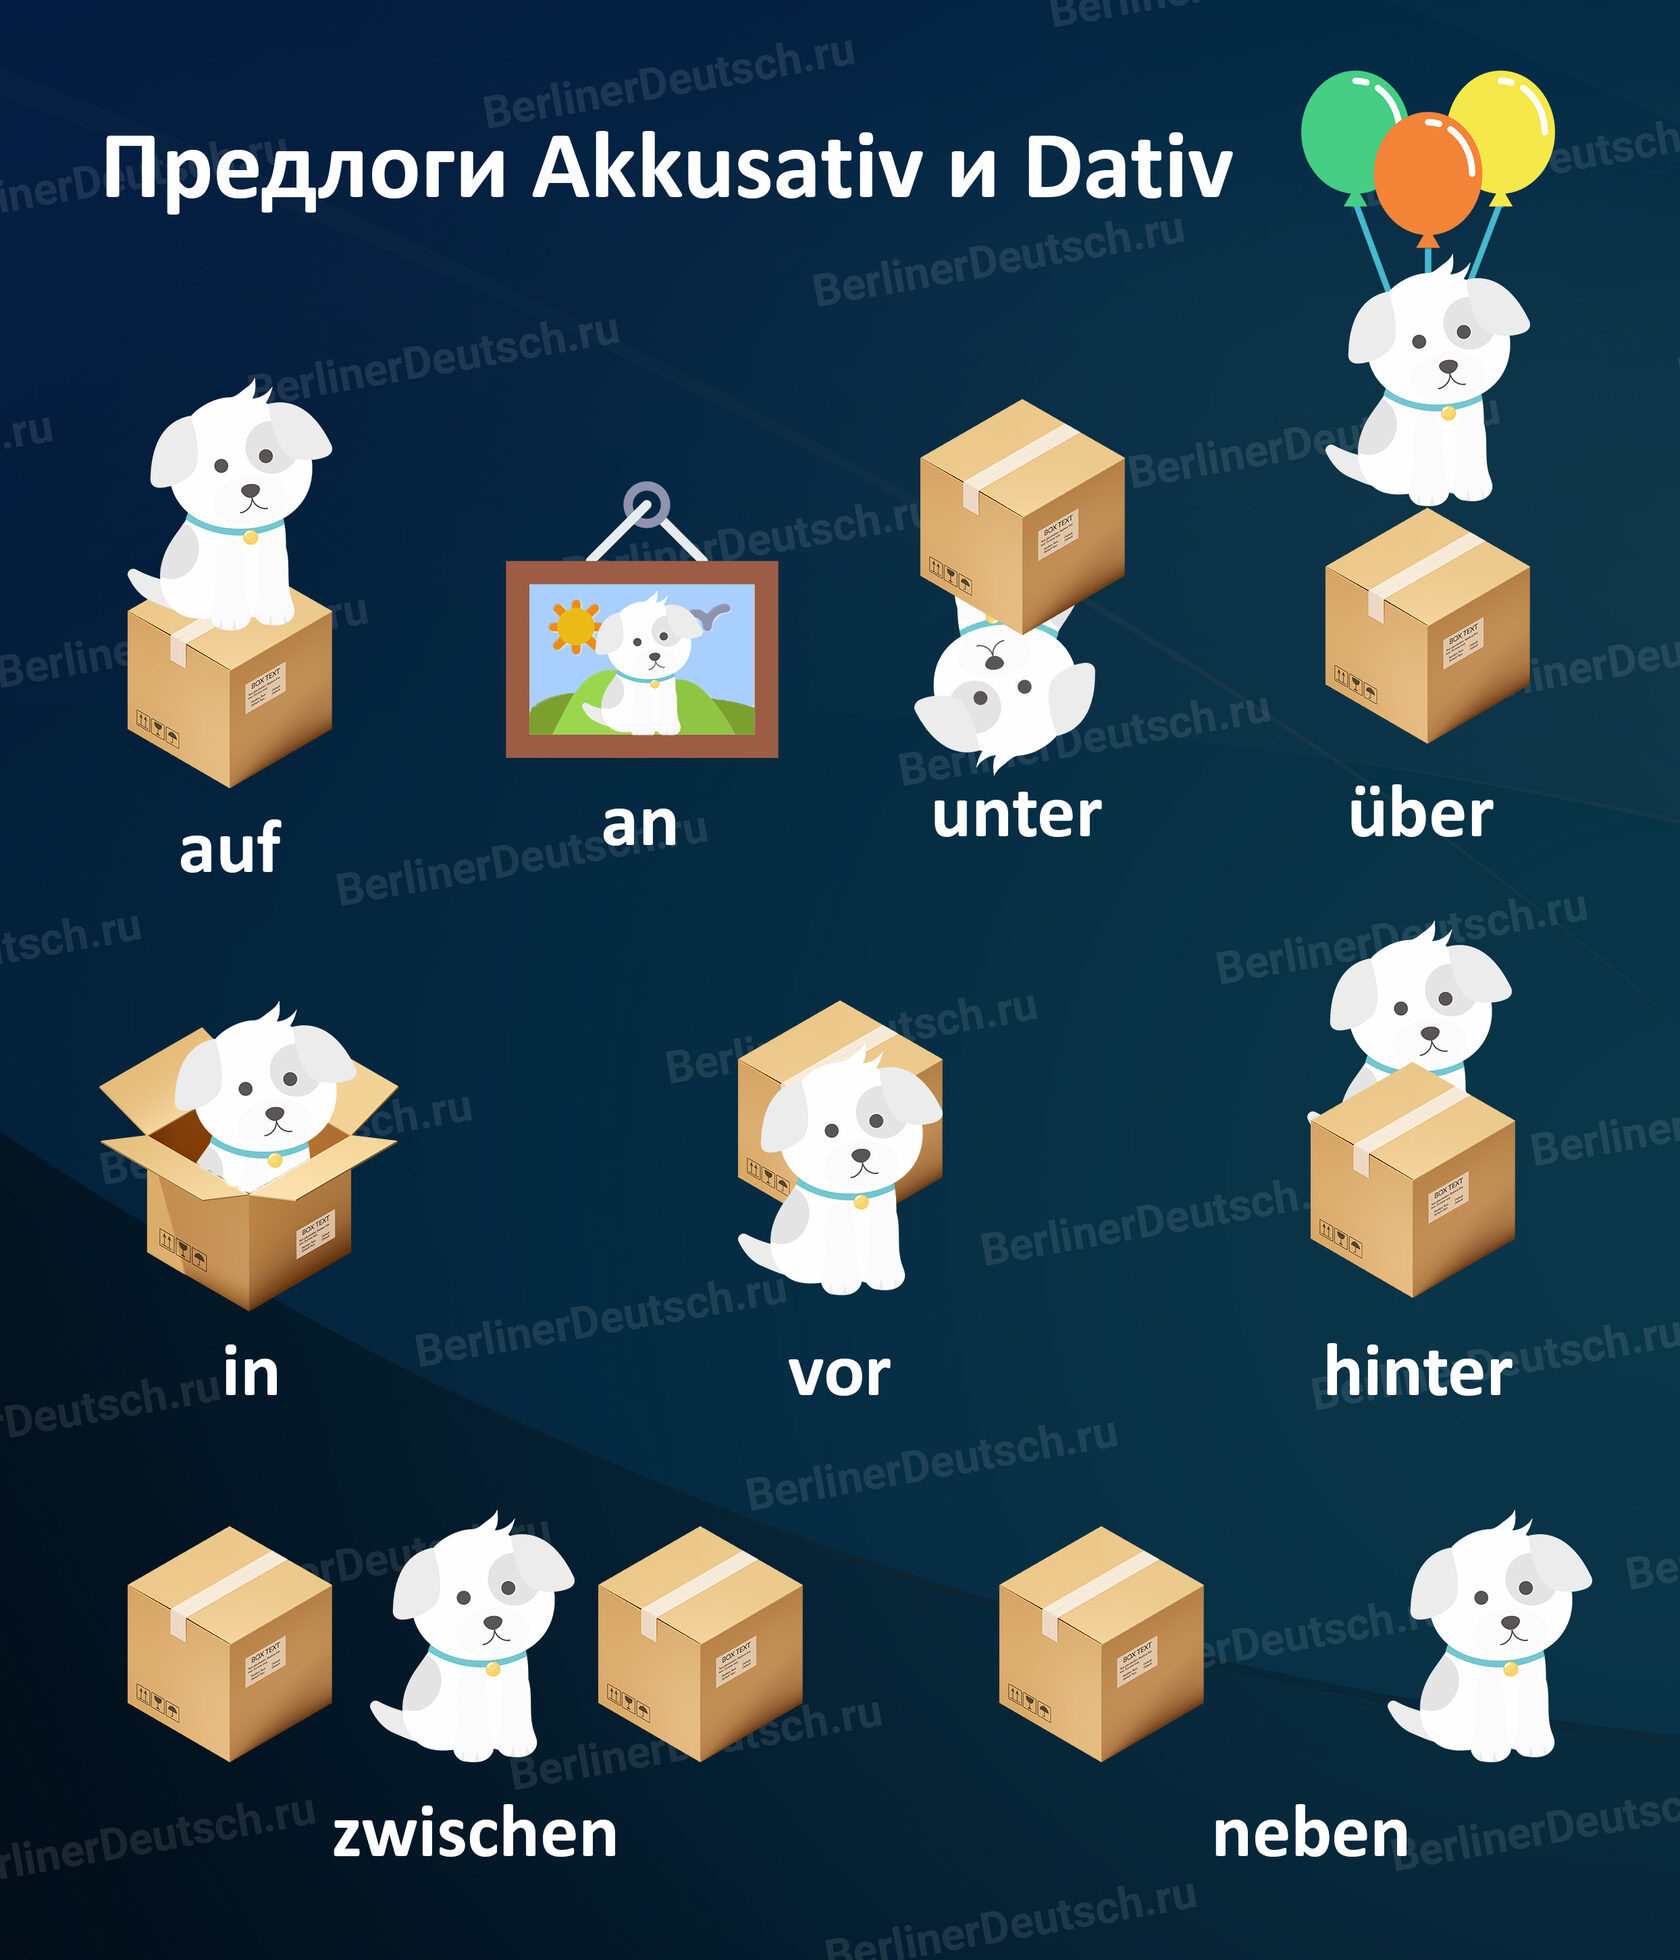 Предлоги немецкого языка, которые употребляются с Akkusativ и Dativ